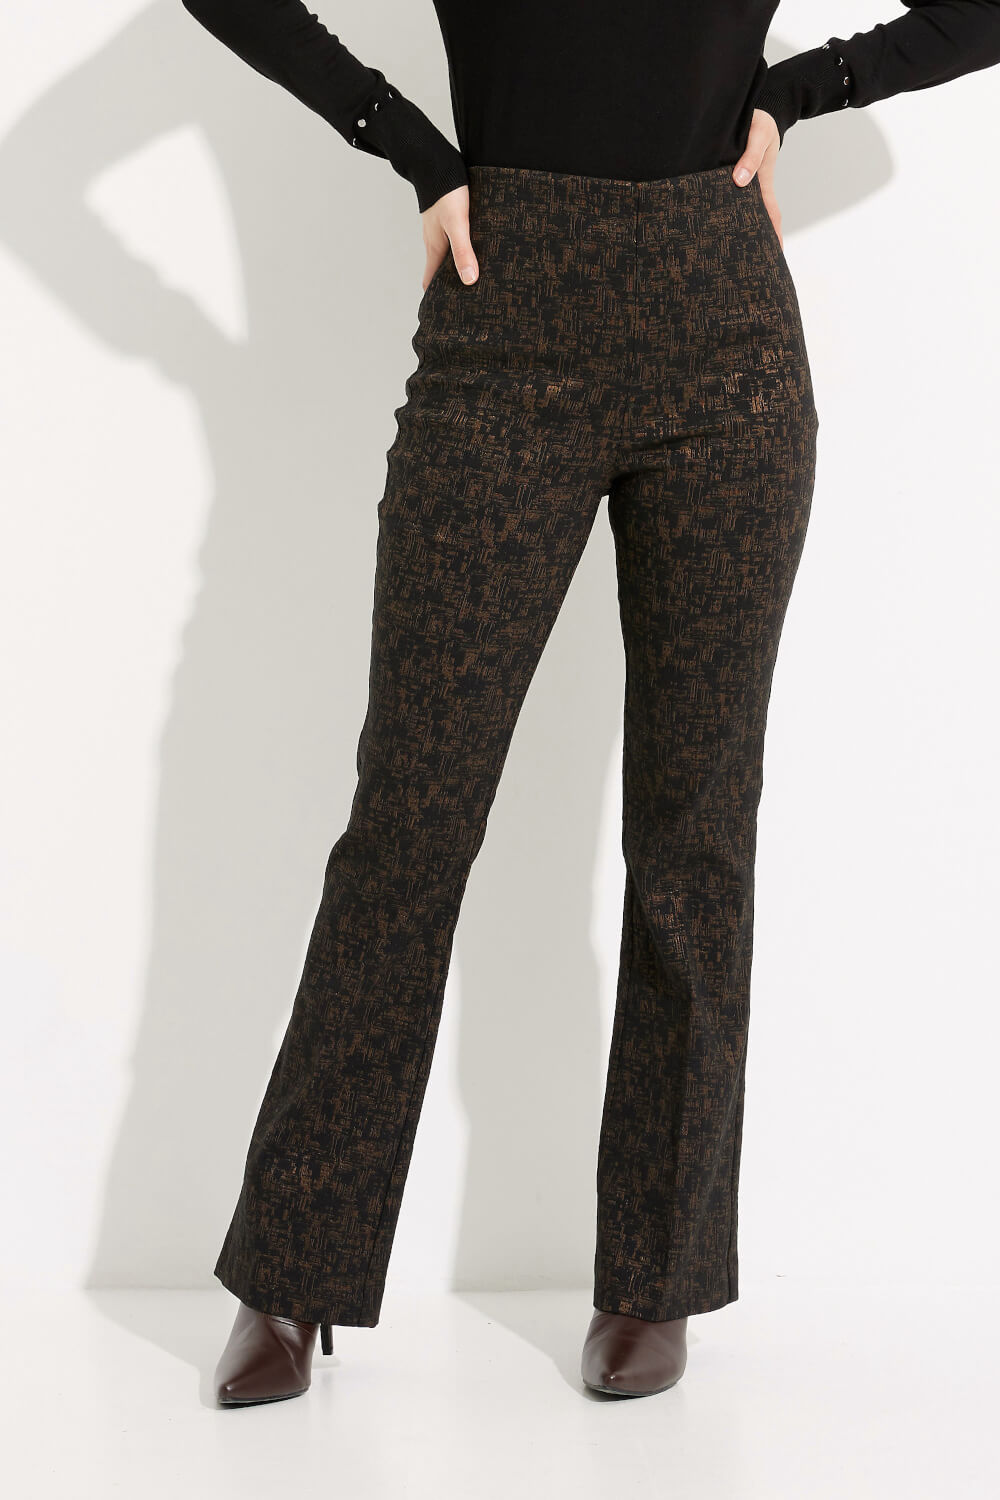 Pantalon droit bicolore modèle 233283. Noir/brun